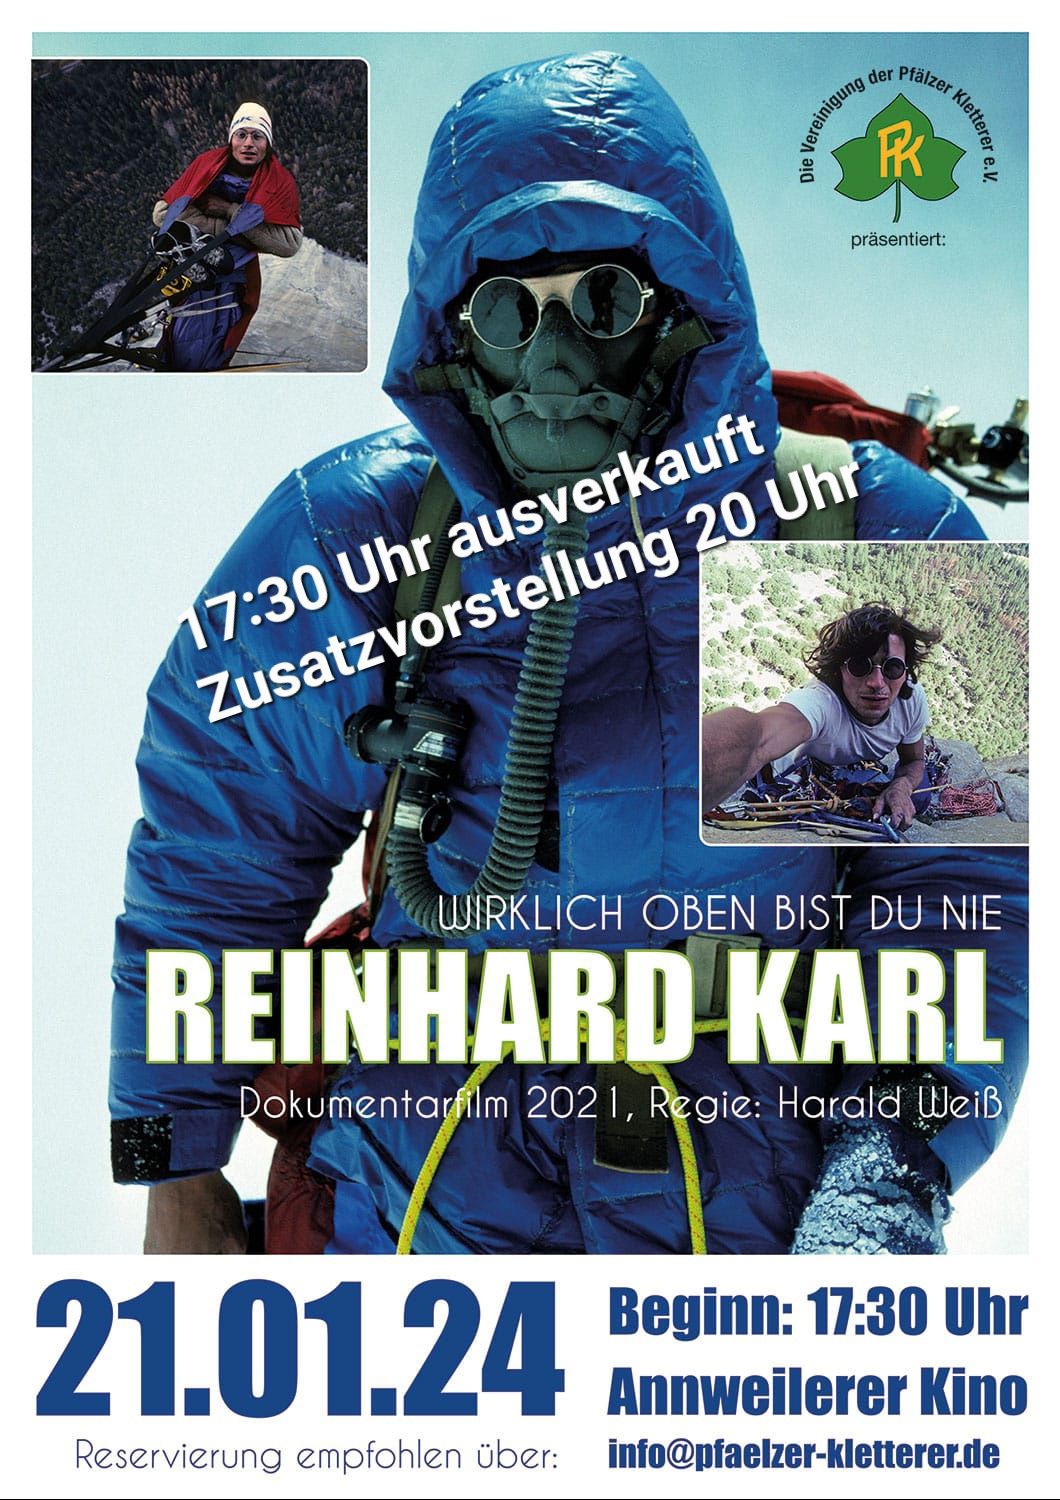 Reinhard Karl Film in Annweiler - 21.01.2024 PK die 